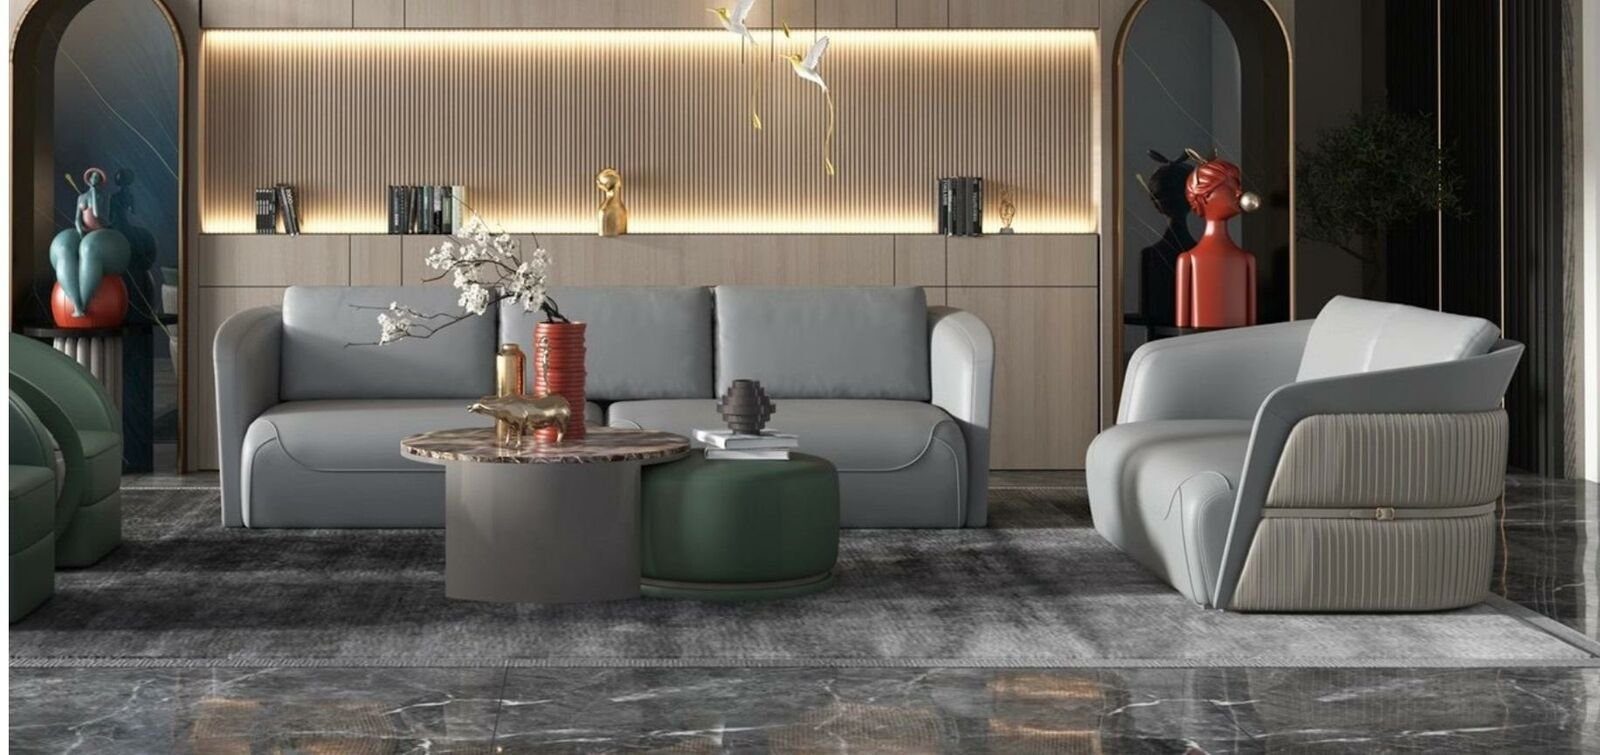 JVmoebel Couchtisch Couch Tisch Kaffee Sofa Beistell Set Luxus Rund 2x Tische Design